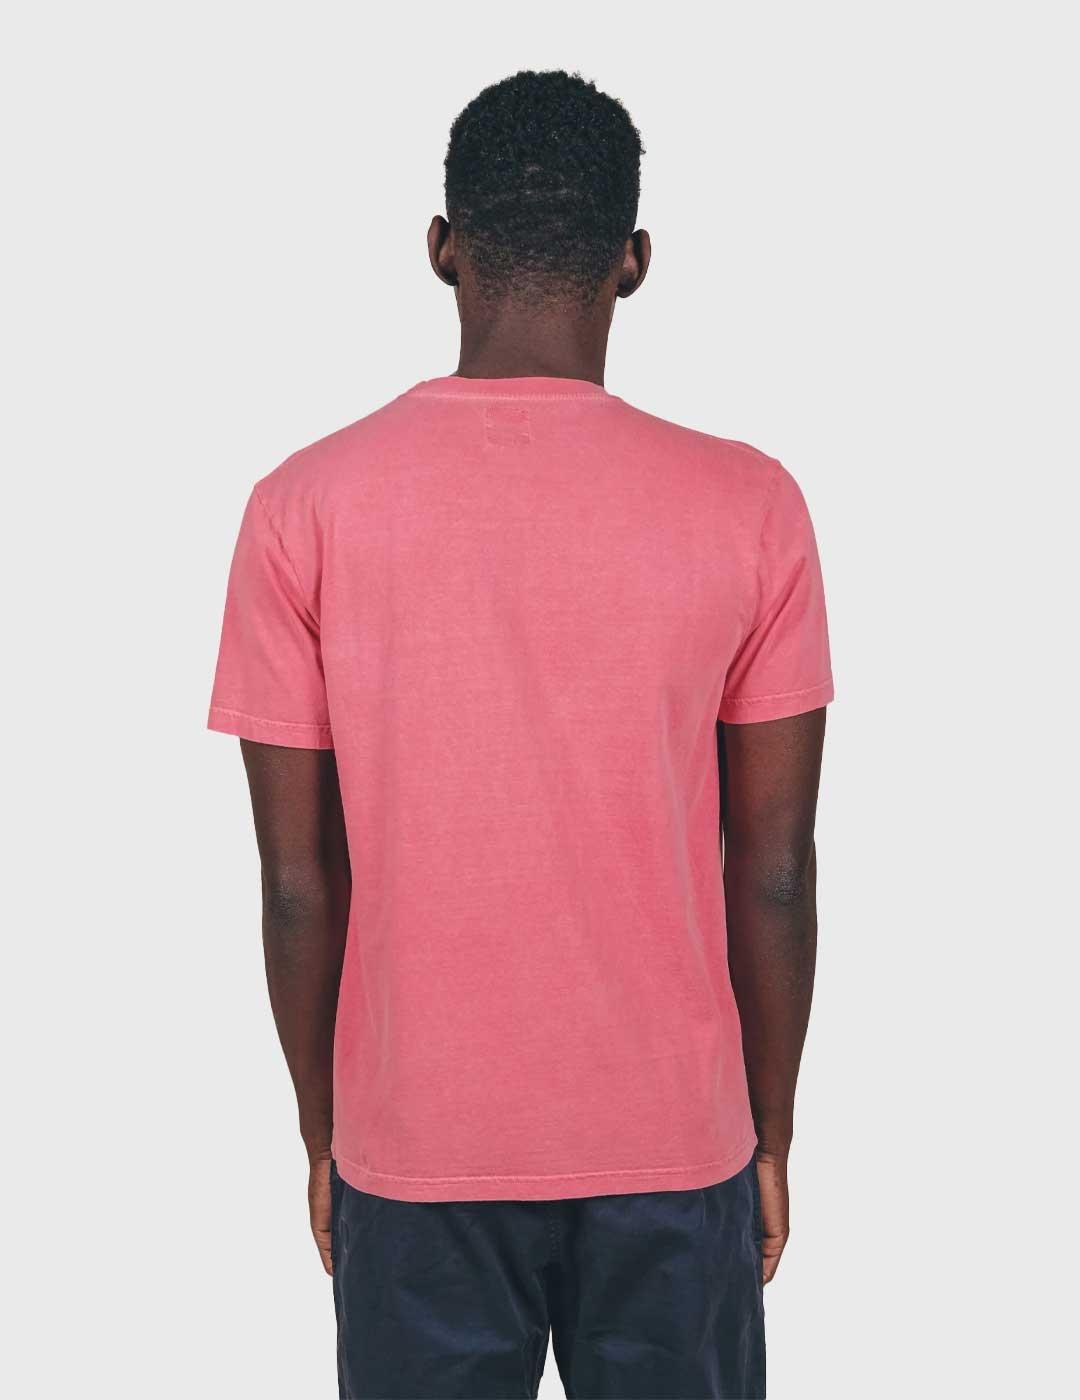 Trendsplant Garza T.Shirt Camiseta rosa para hombre